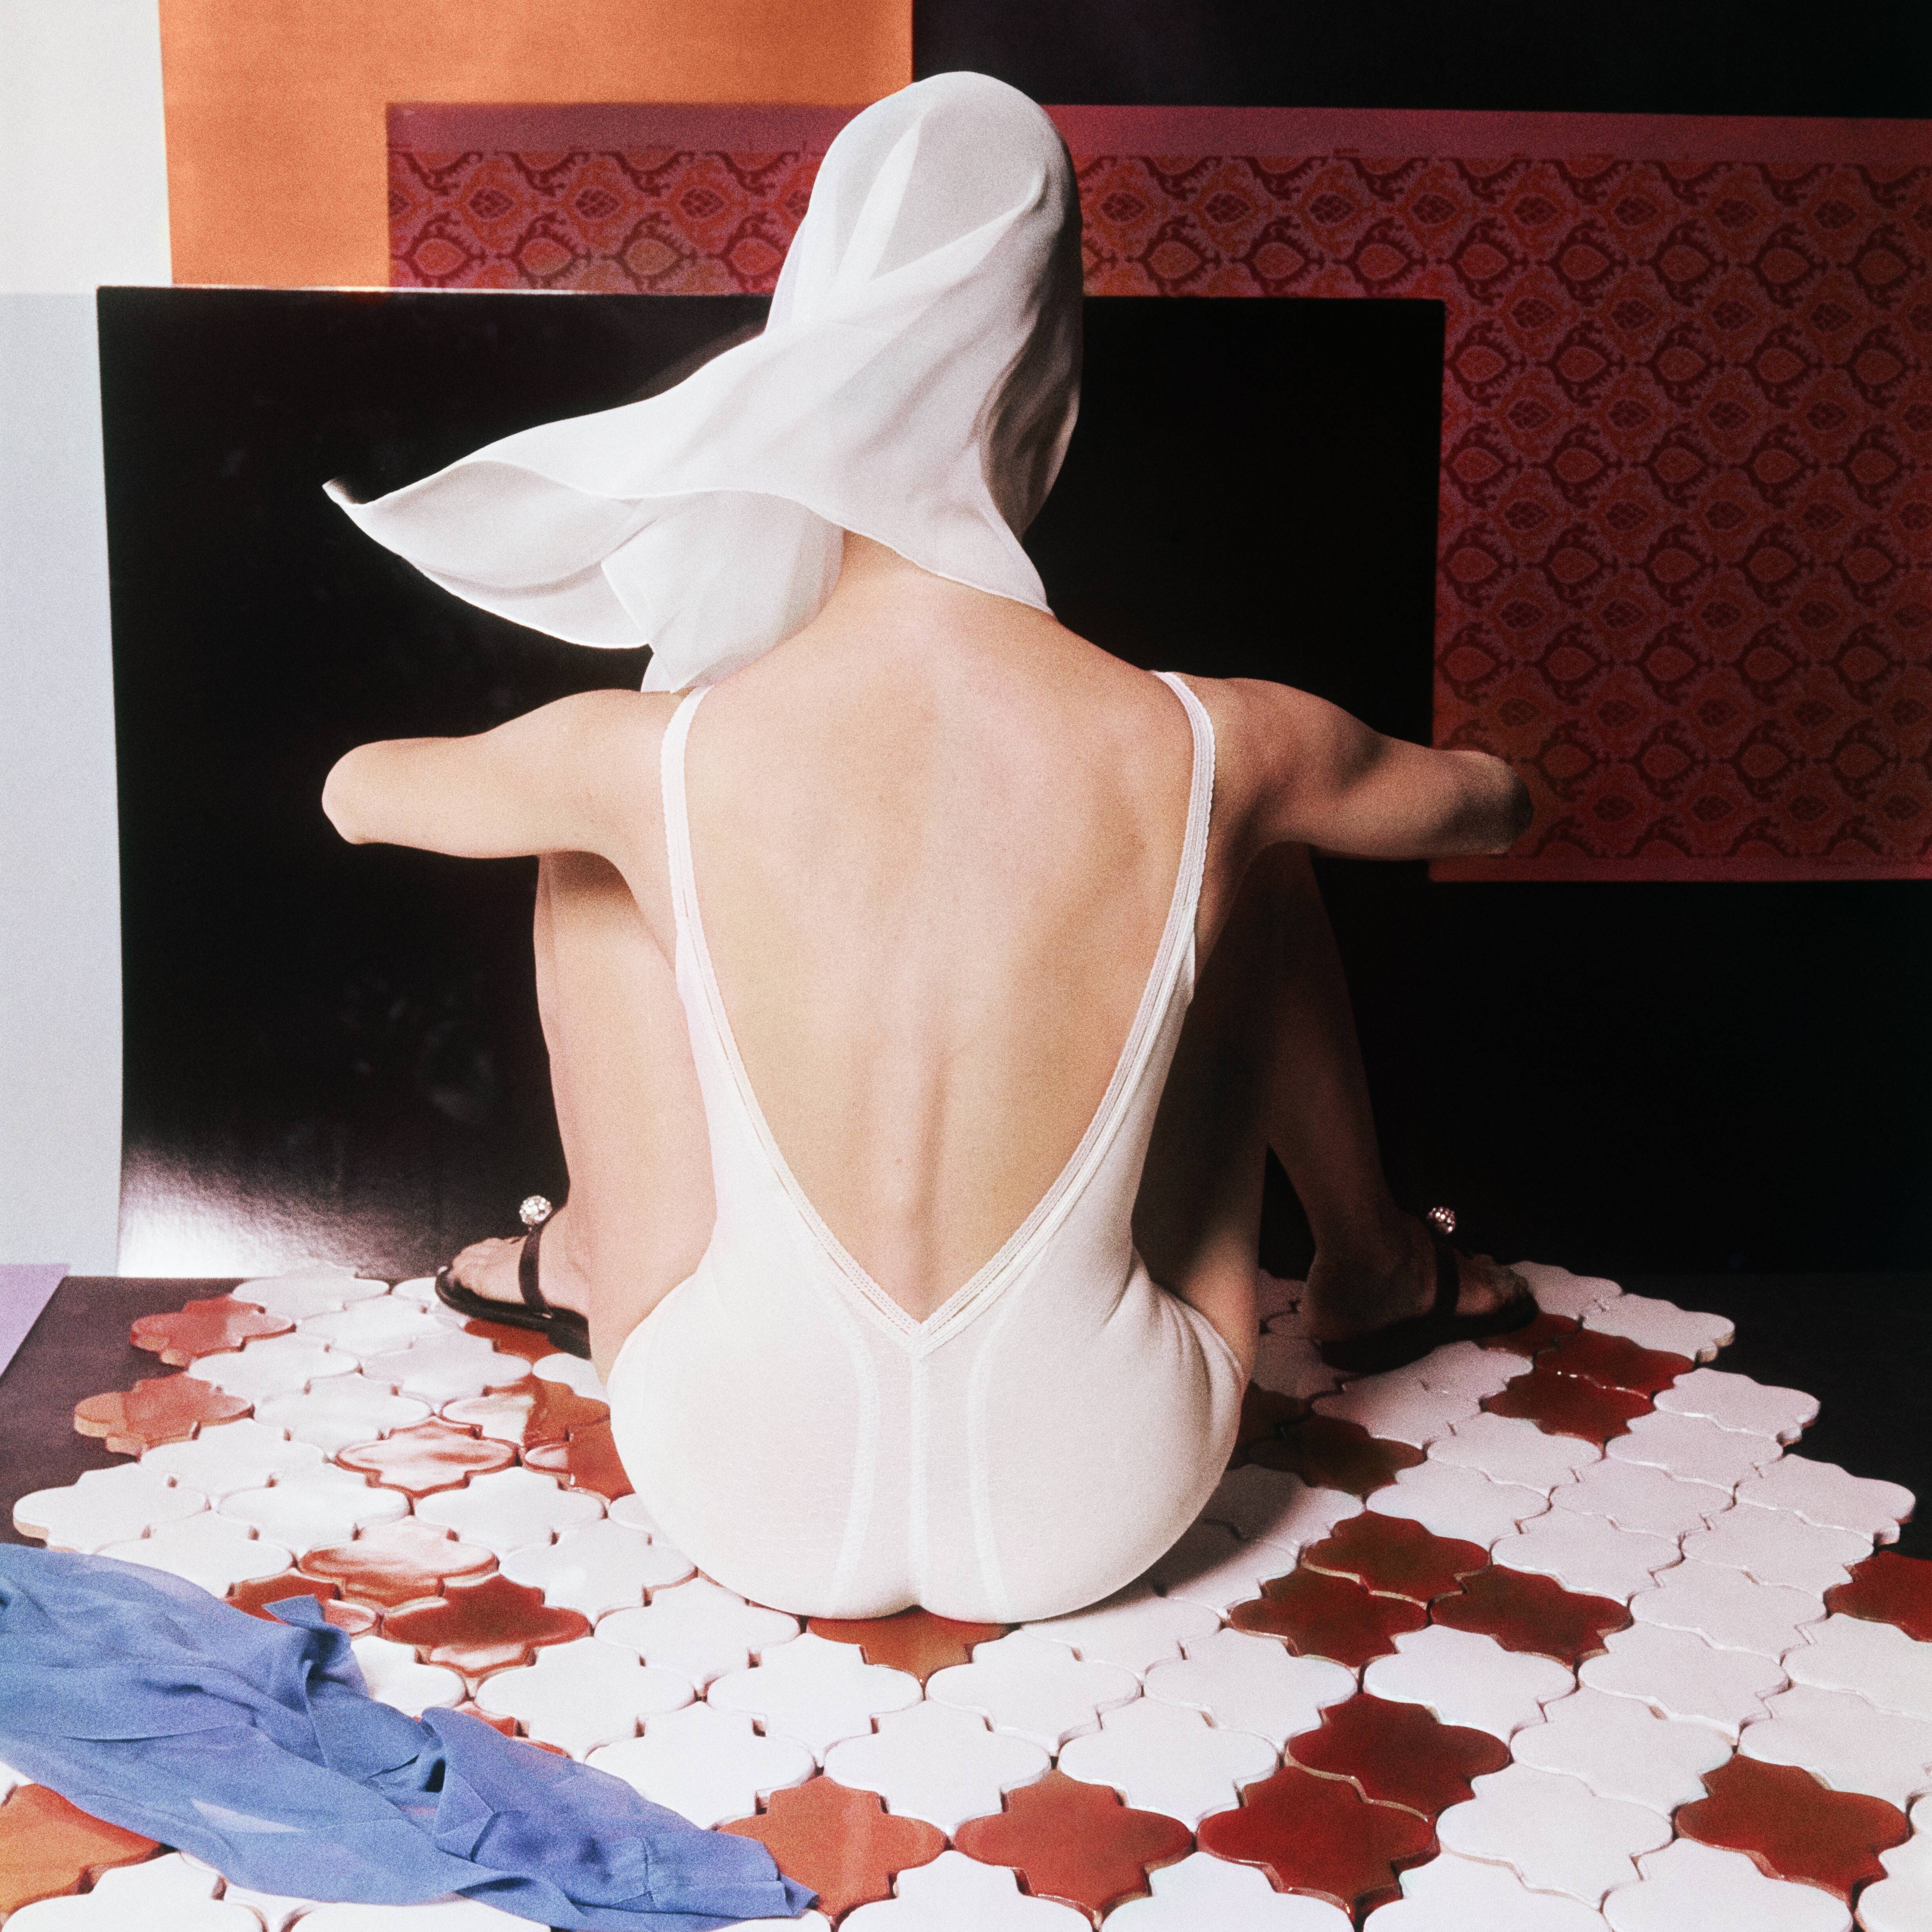 Белое нижнее бельё на французской керамической плитке, 1963. Фотограф Хорст П. Хорст